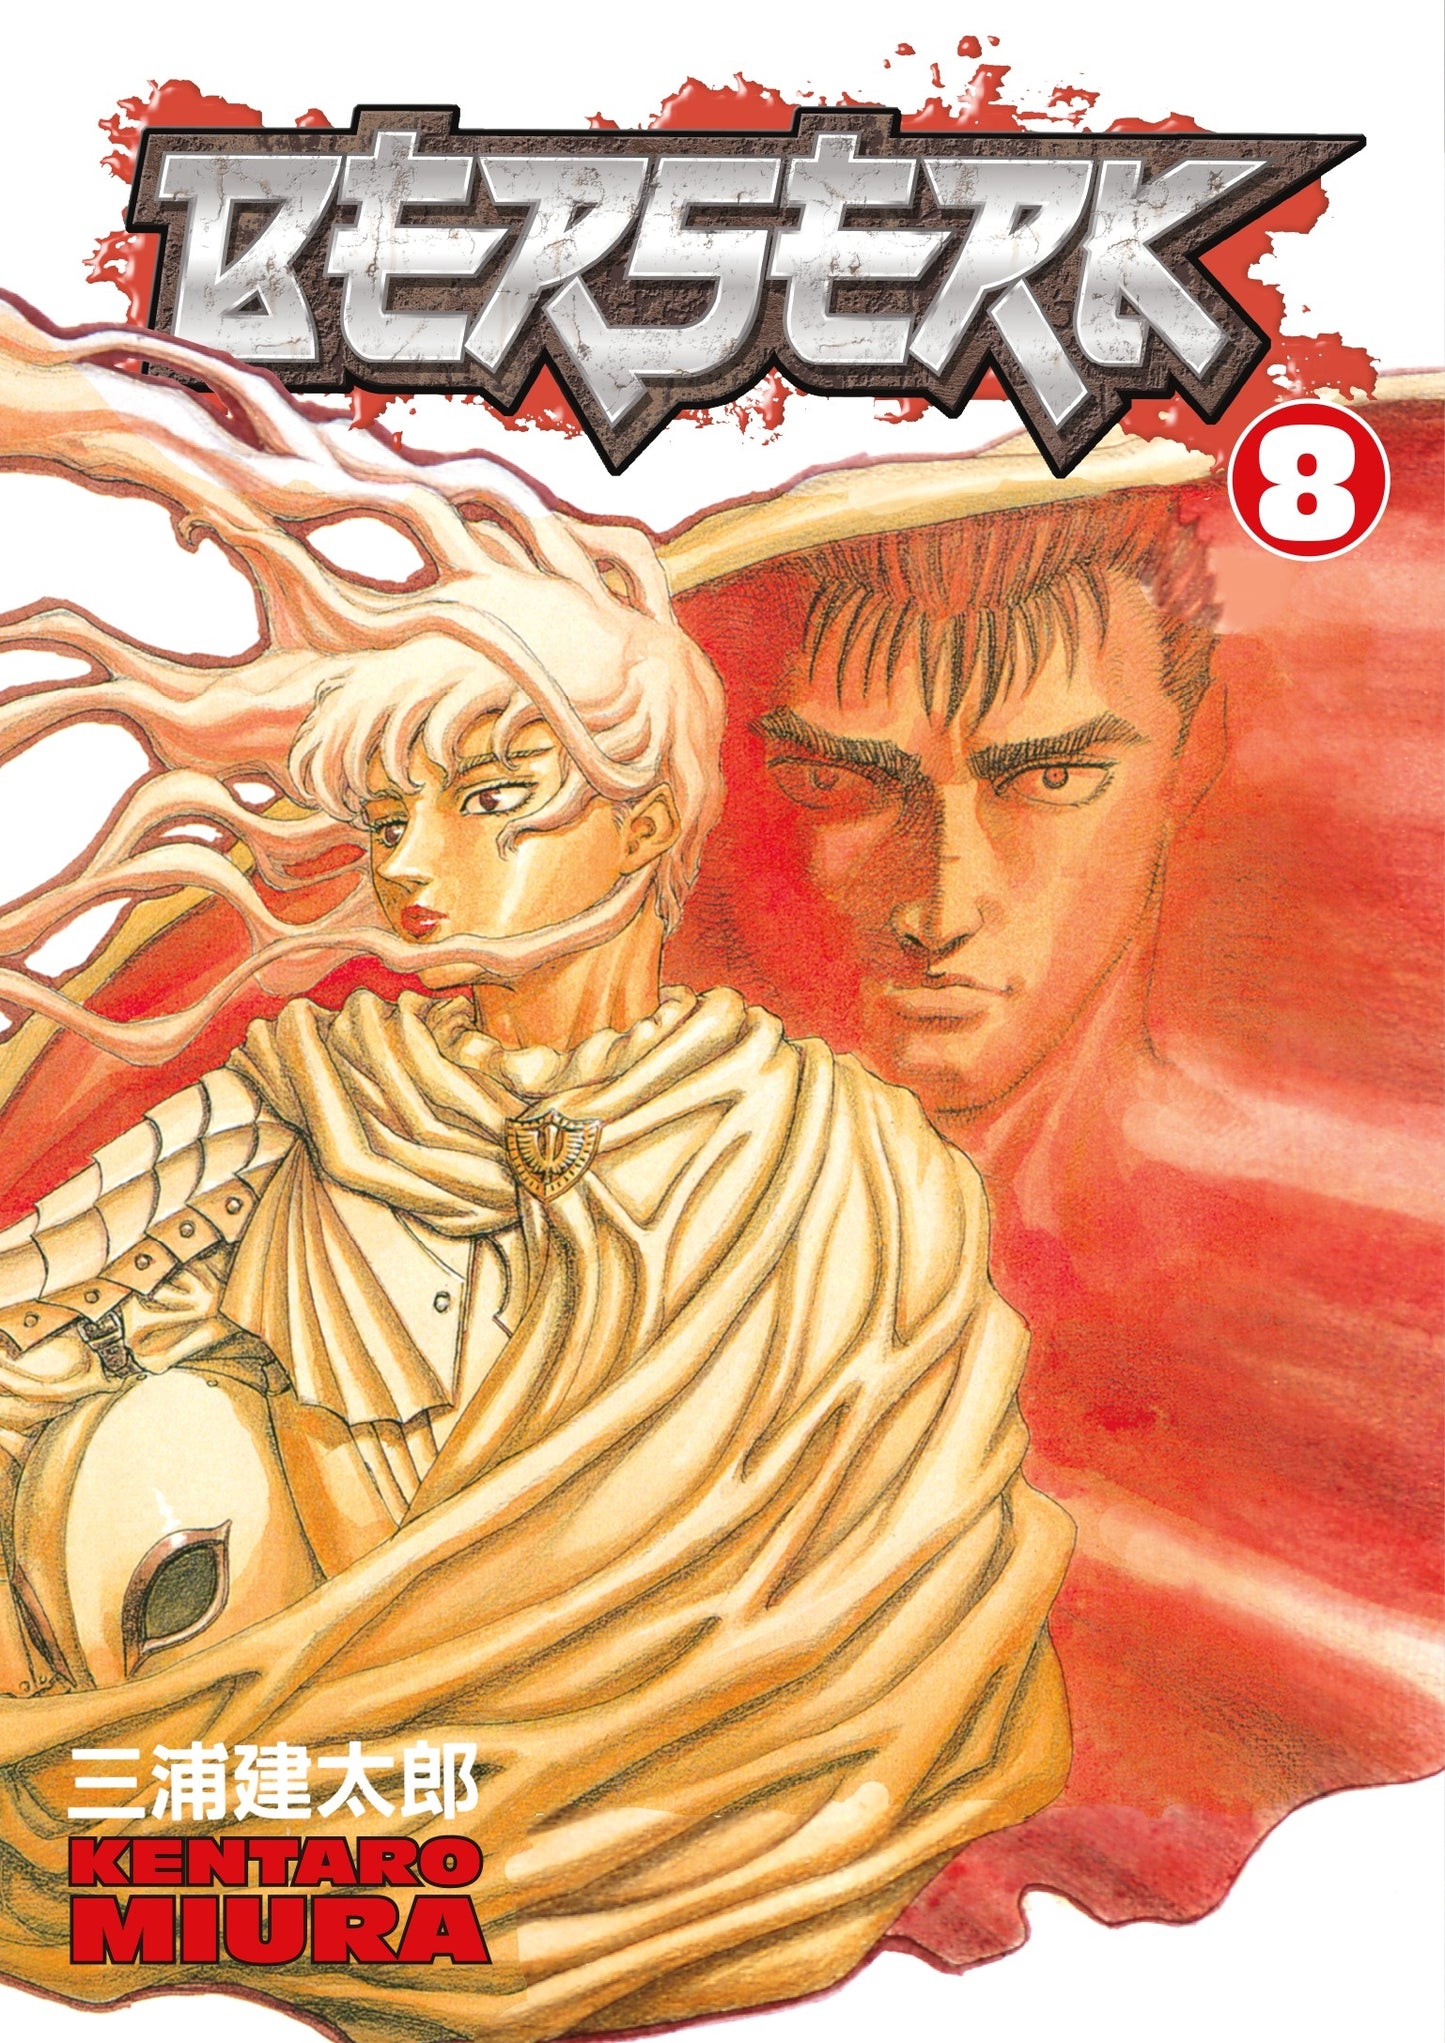 Berserk Volume 8 - Manga Warehouse